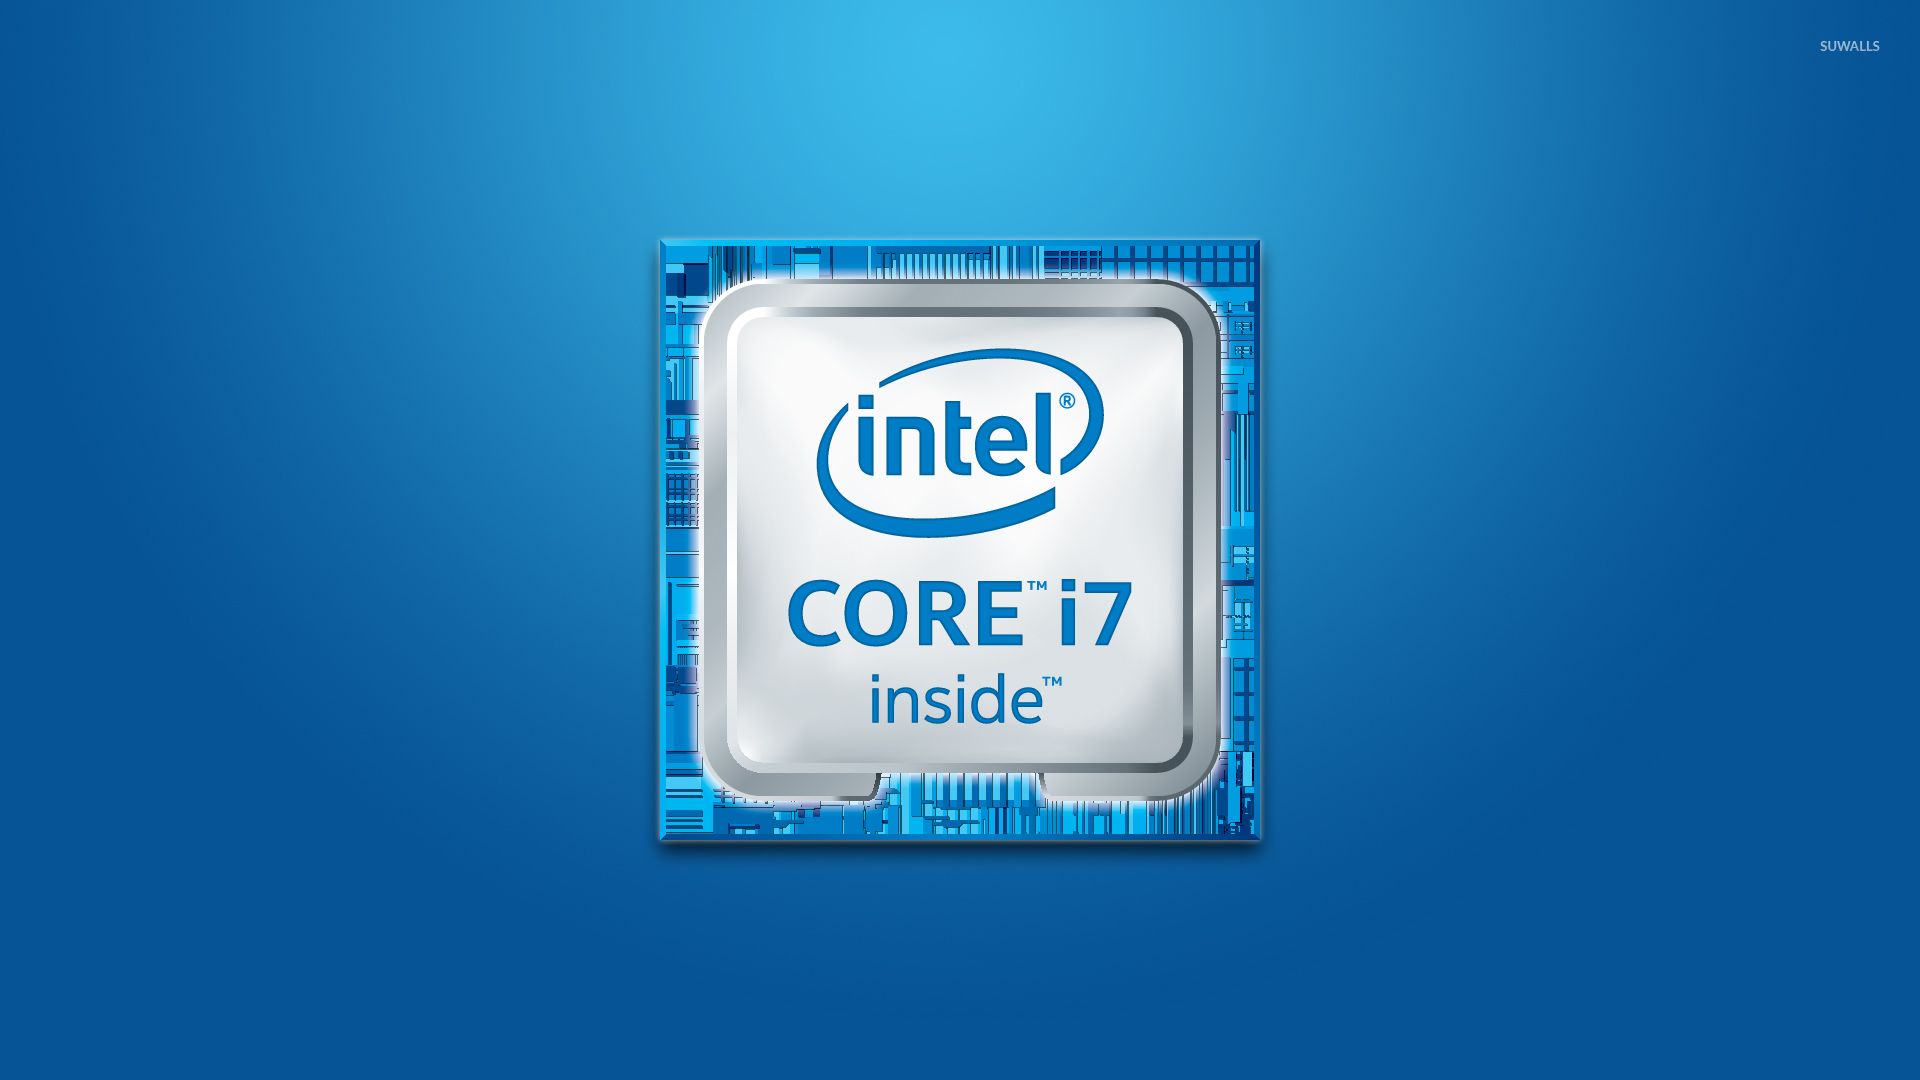 Đừng lo khi mất tem “Intel Inside”, họ sẽ gửi bạn cái mới hoàn toàn miễn phí